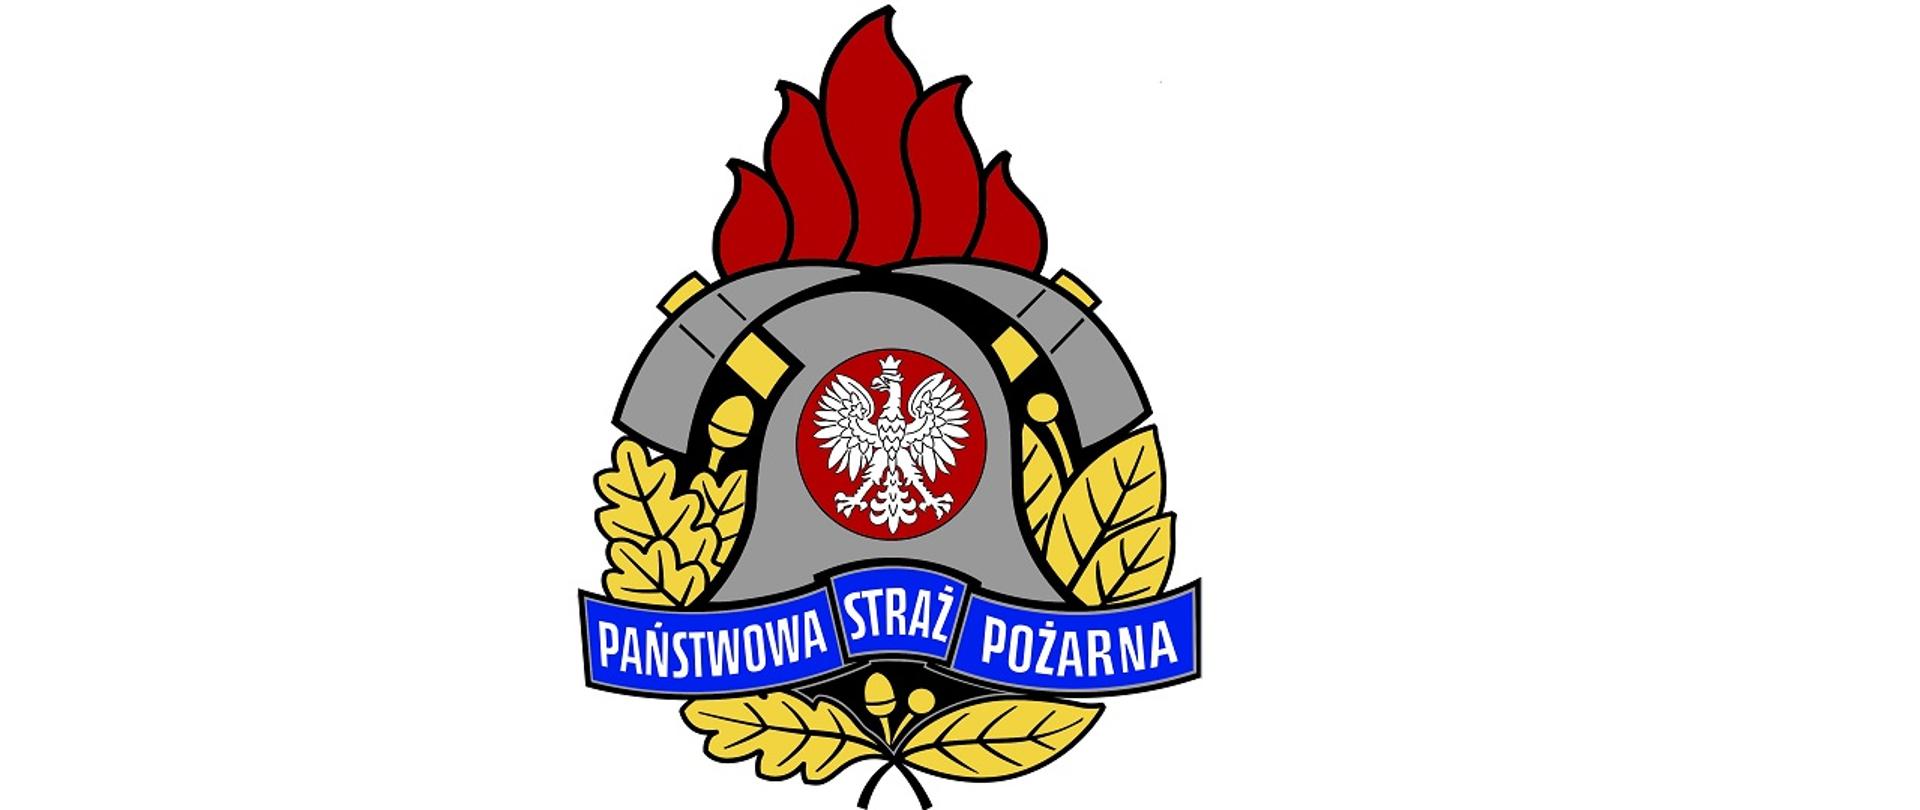 Obraz przedstawia logo Państwowej Straży Pożarnej